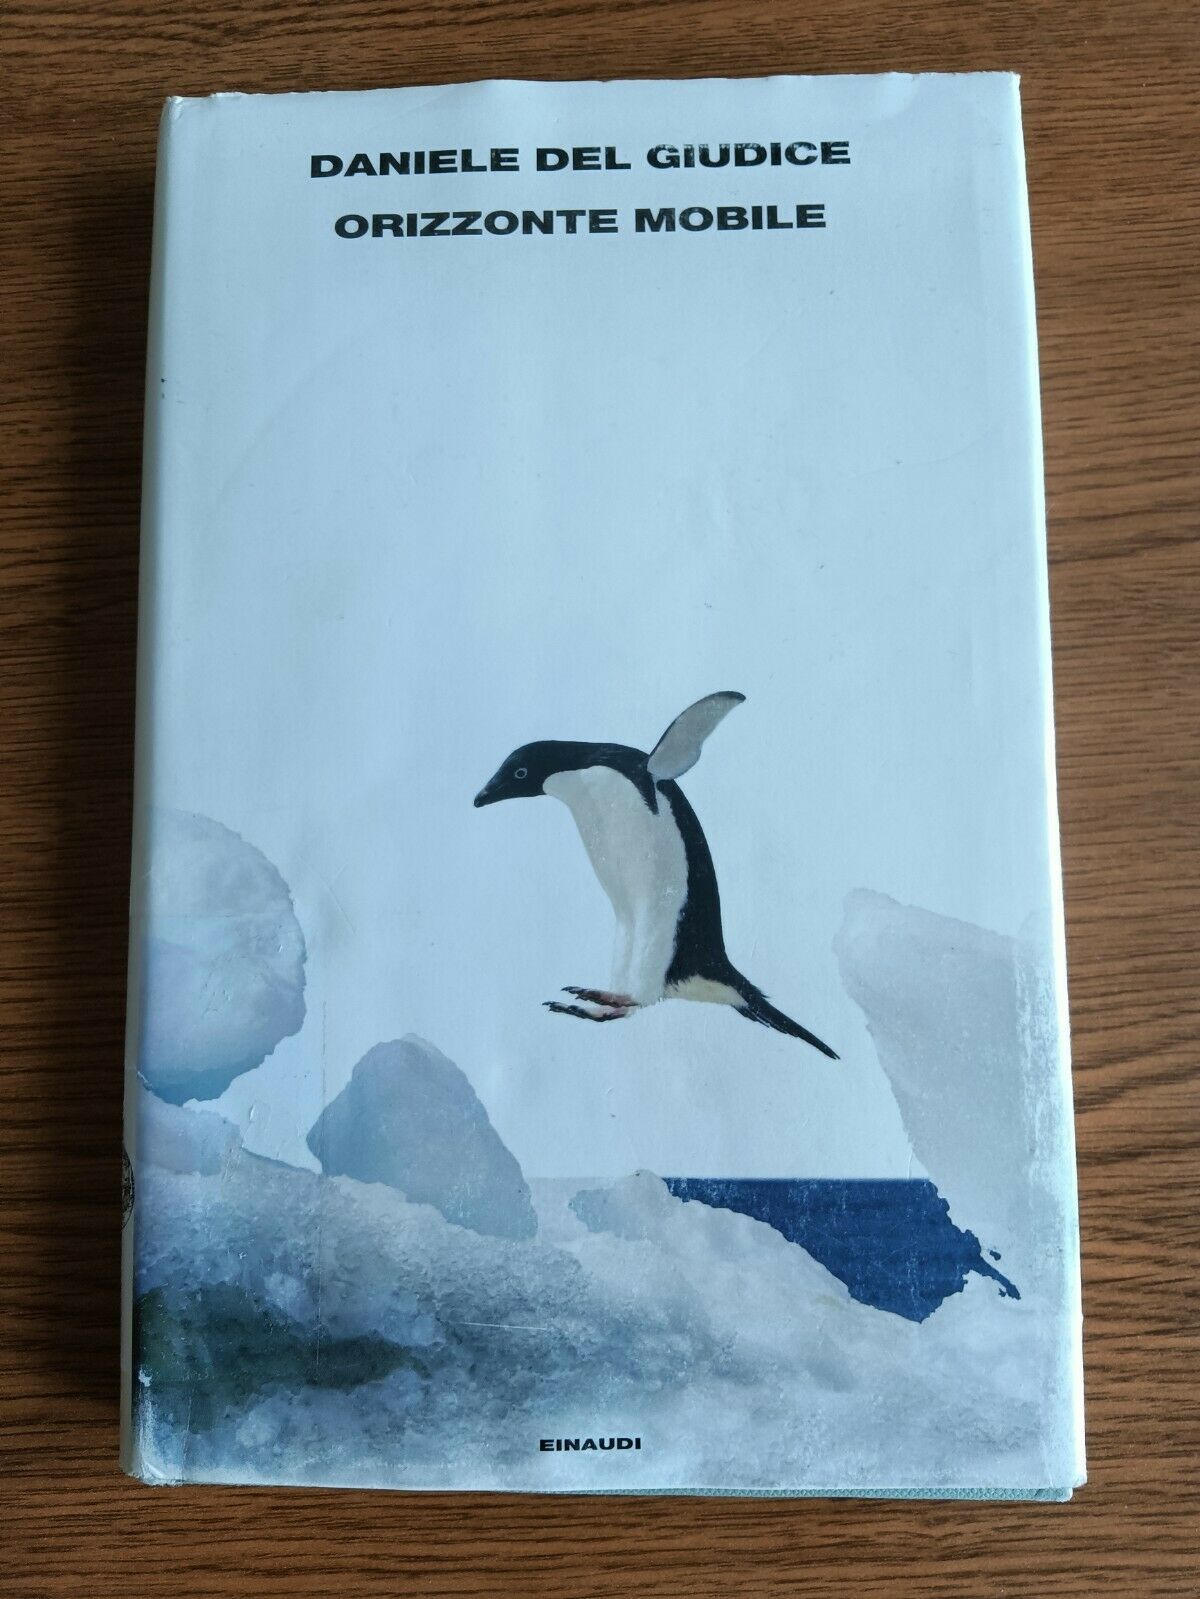 Orizzonte mobile | Daniele Del Giudice - Einaudi